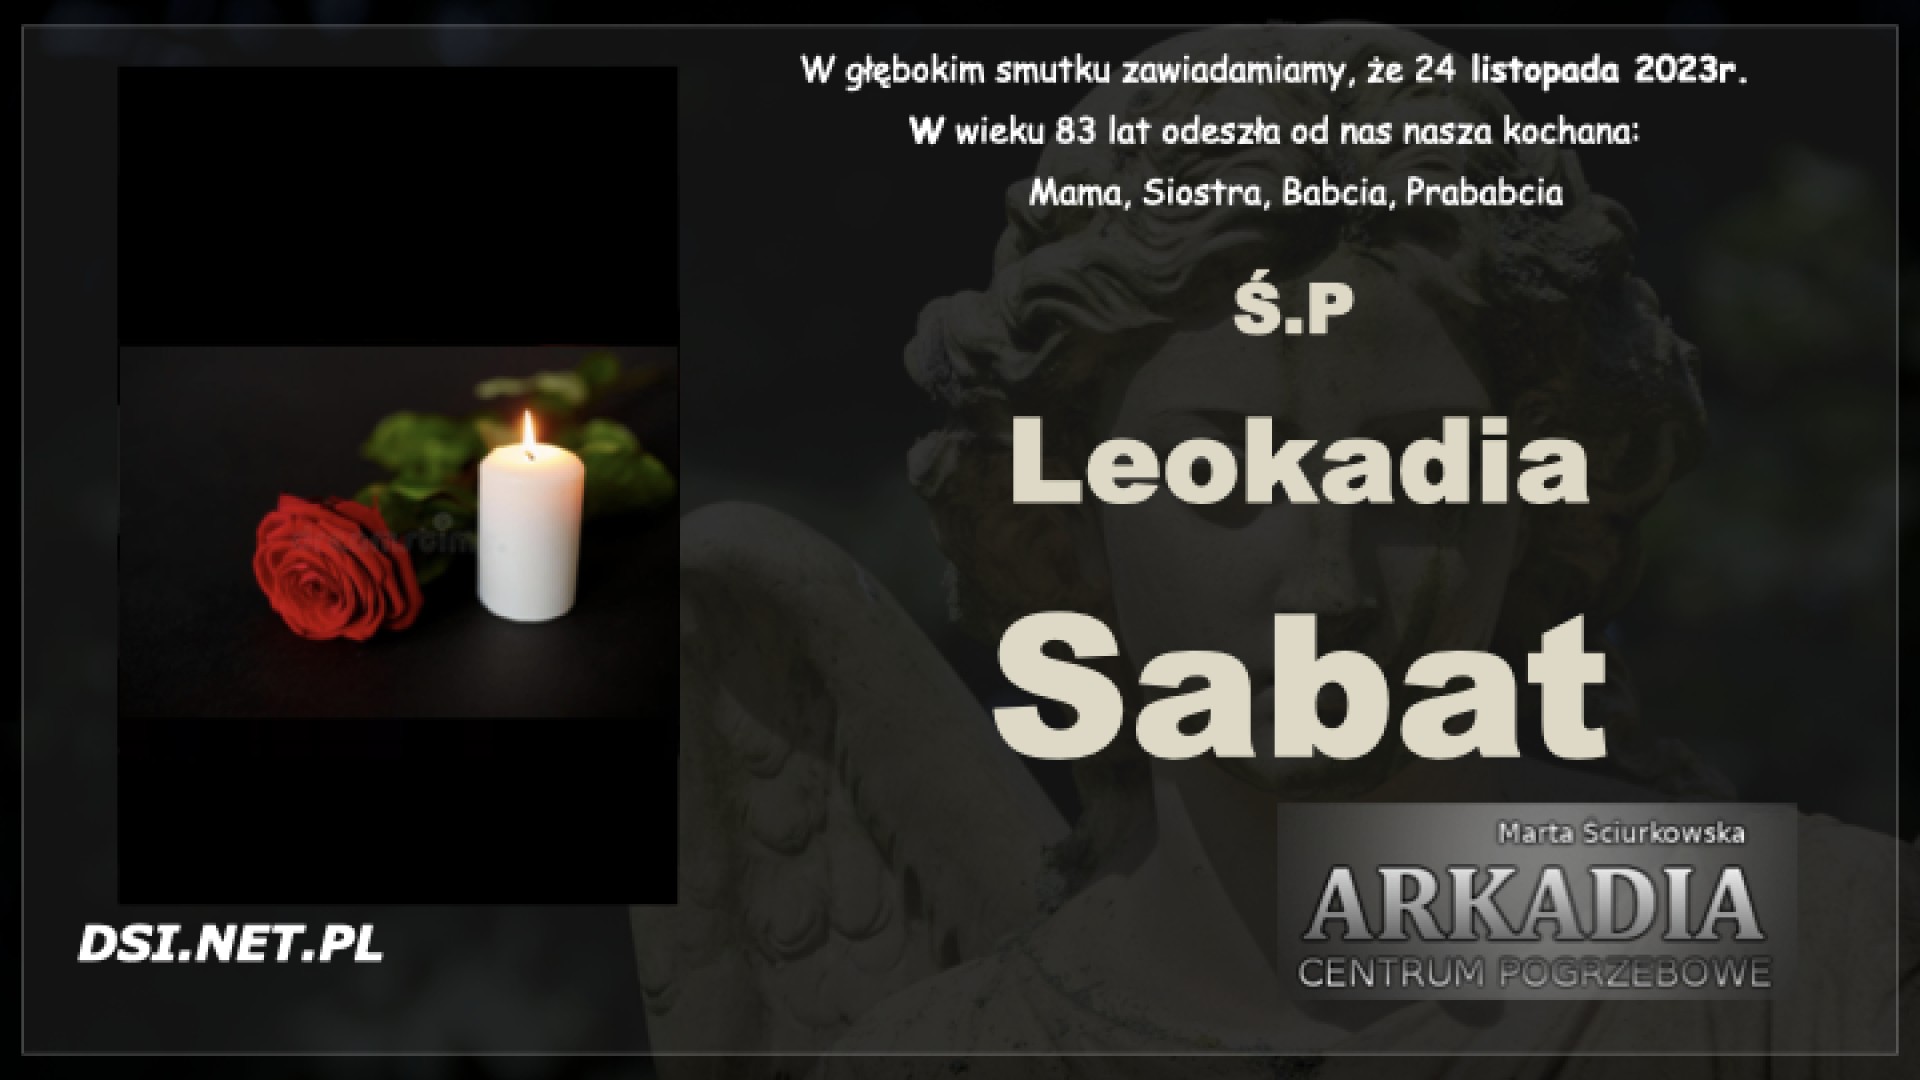 Ś.P. Leokadia Sabat